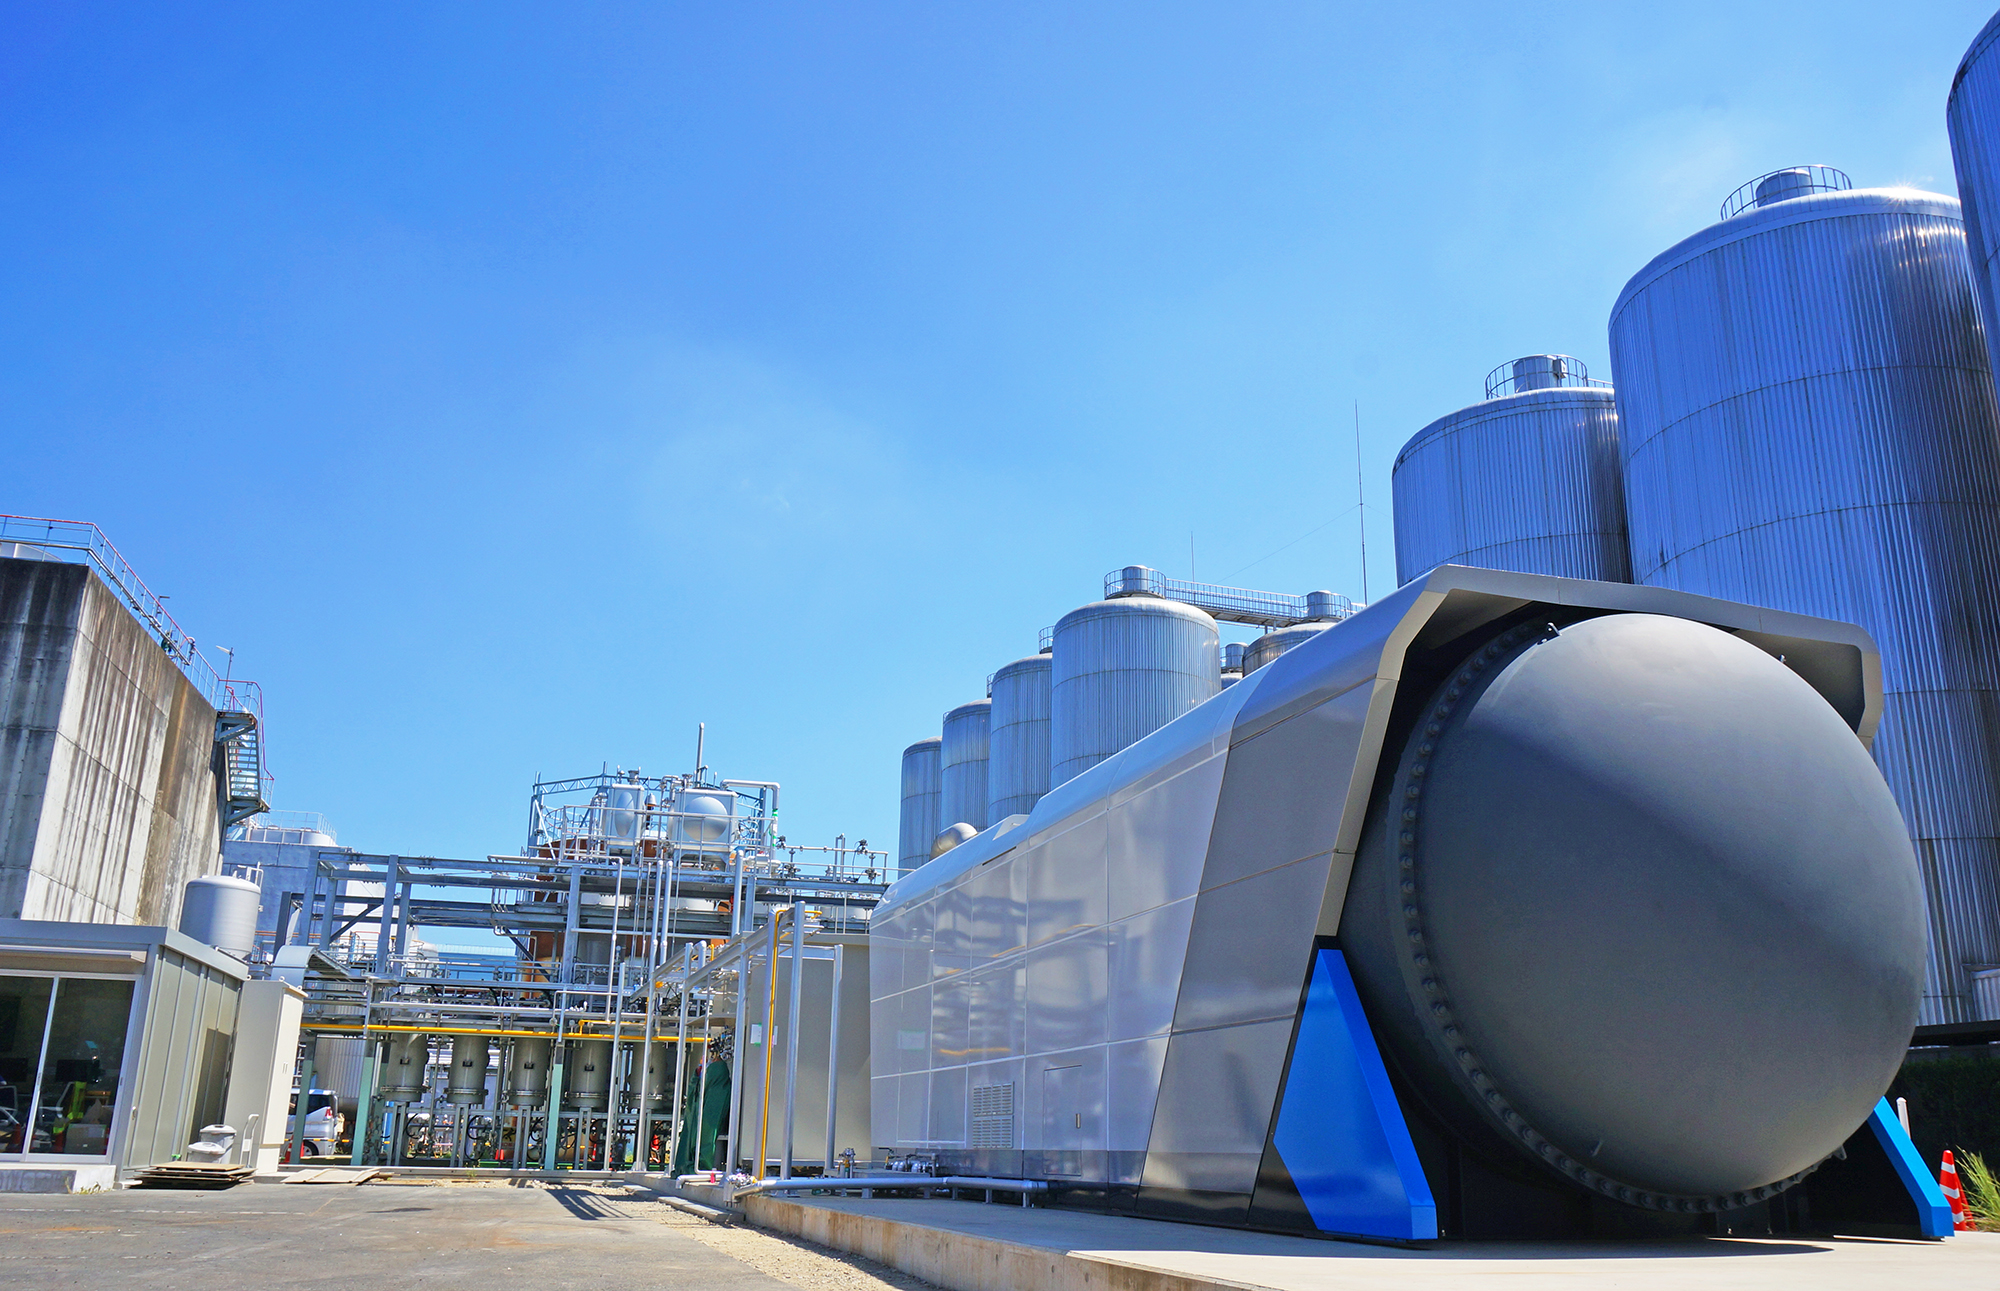 ビール工場排水由来のバイオガスを活用した燃料電池発電の実証事業を開始 アサヒグループホールディングス株式会社のプレスリリース